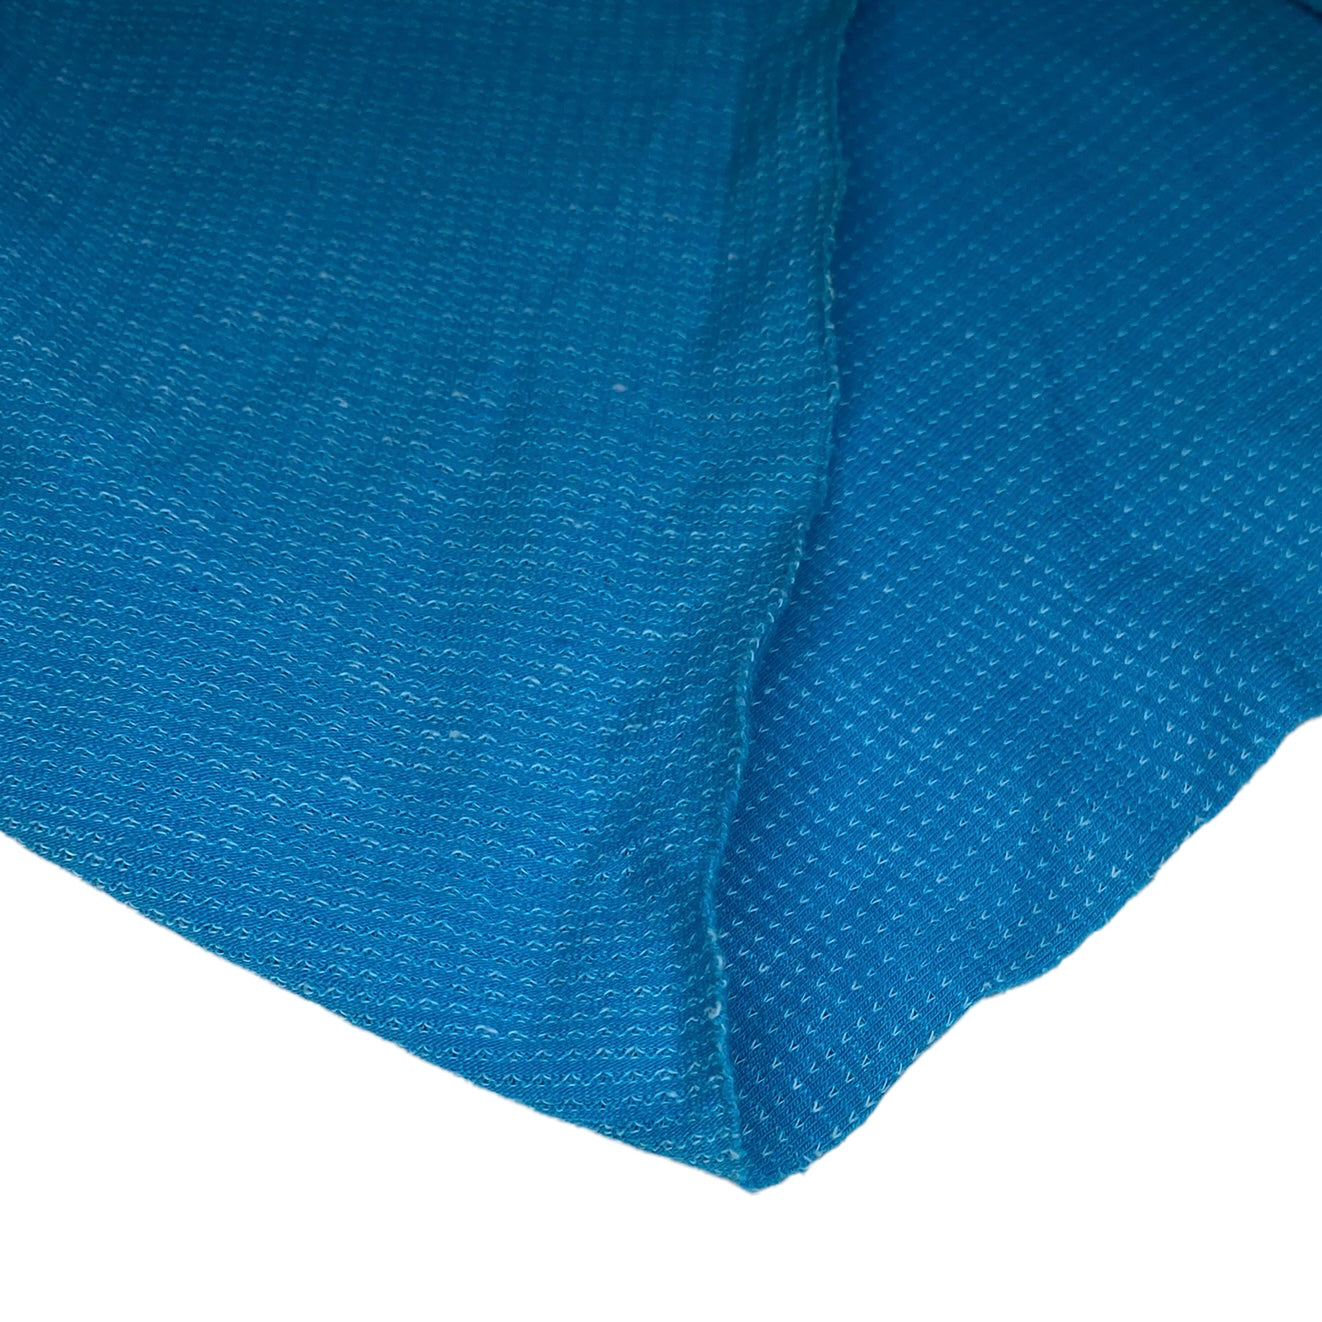 Cotton Knit - Blue/White